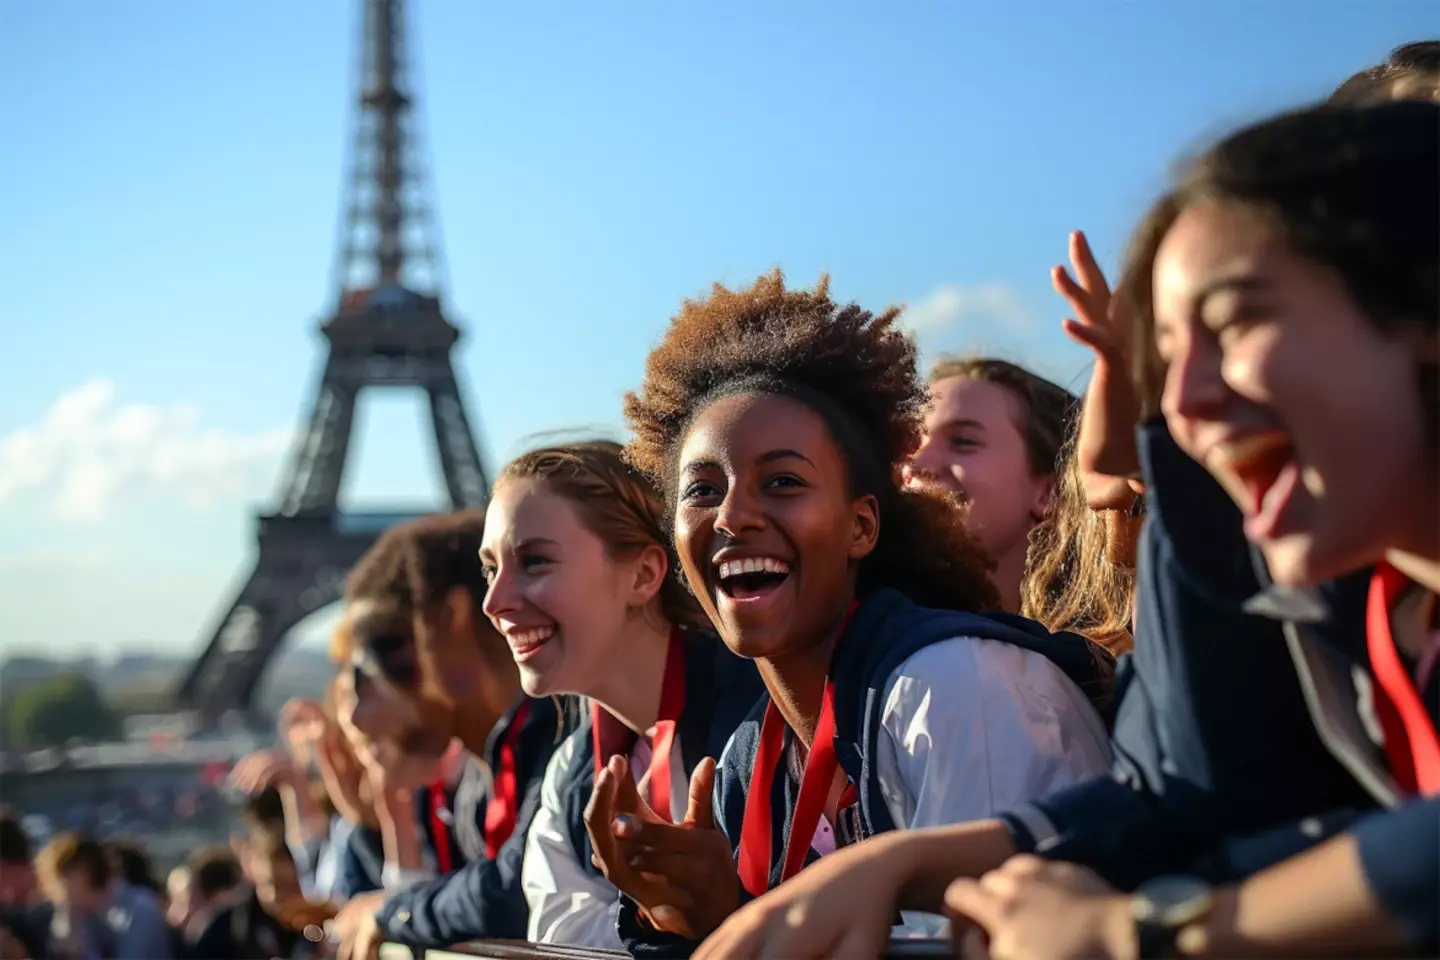 Begeisterte Fans jubeln bei einem herausragenden Ereignis, mit dem Eiffelturm im Hintergrund, welches die Aufregung um große Sportveranstaltungen in Frankreich im Jahr 2024 symbolisiert.